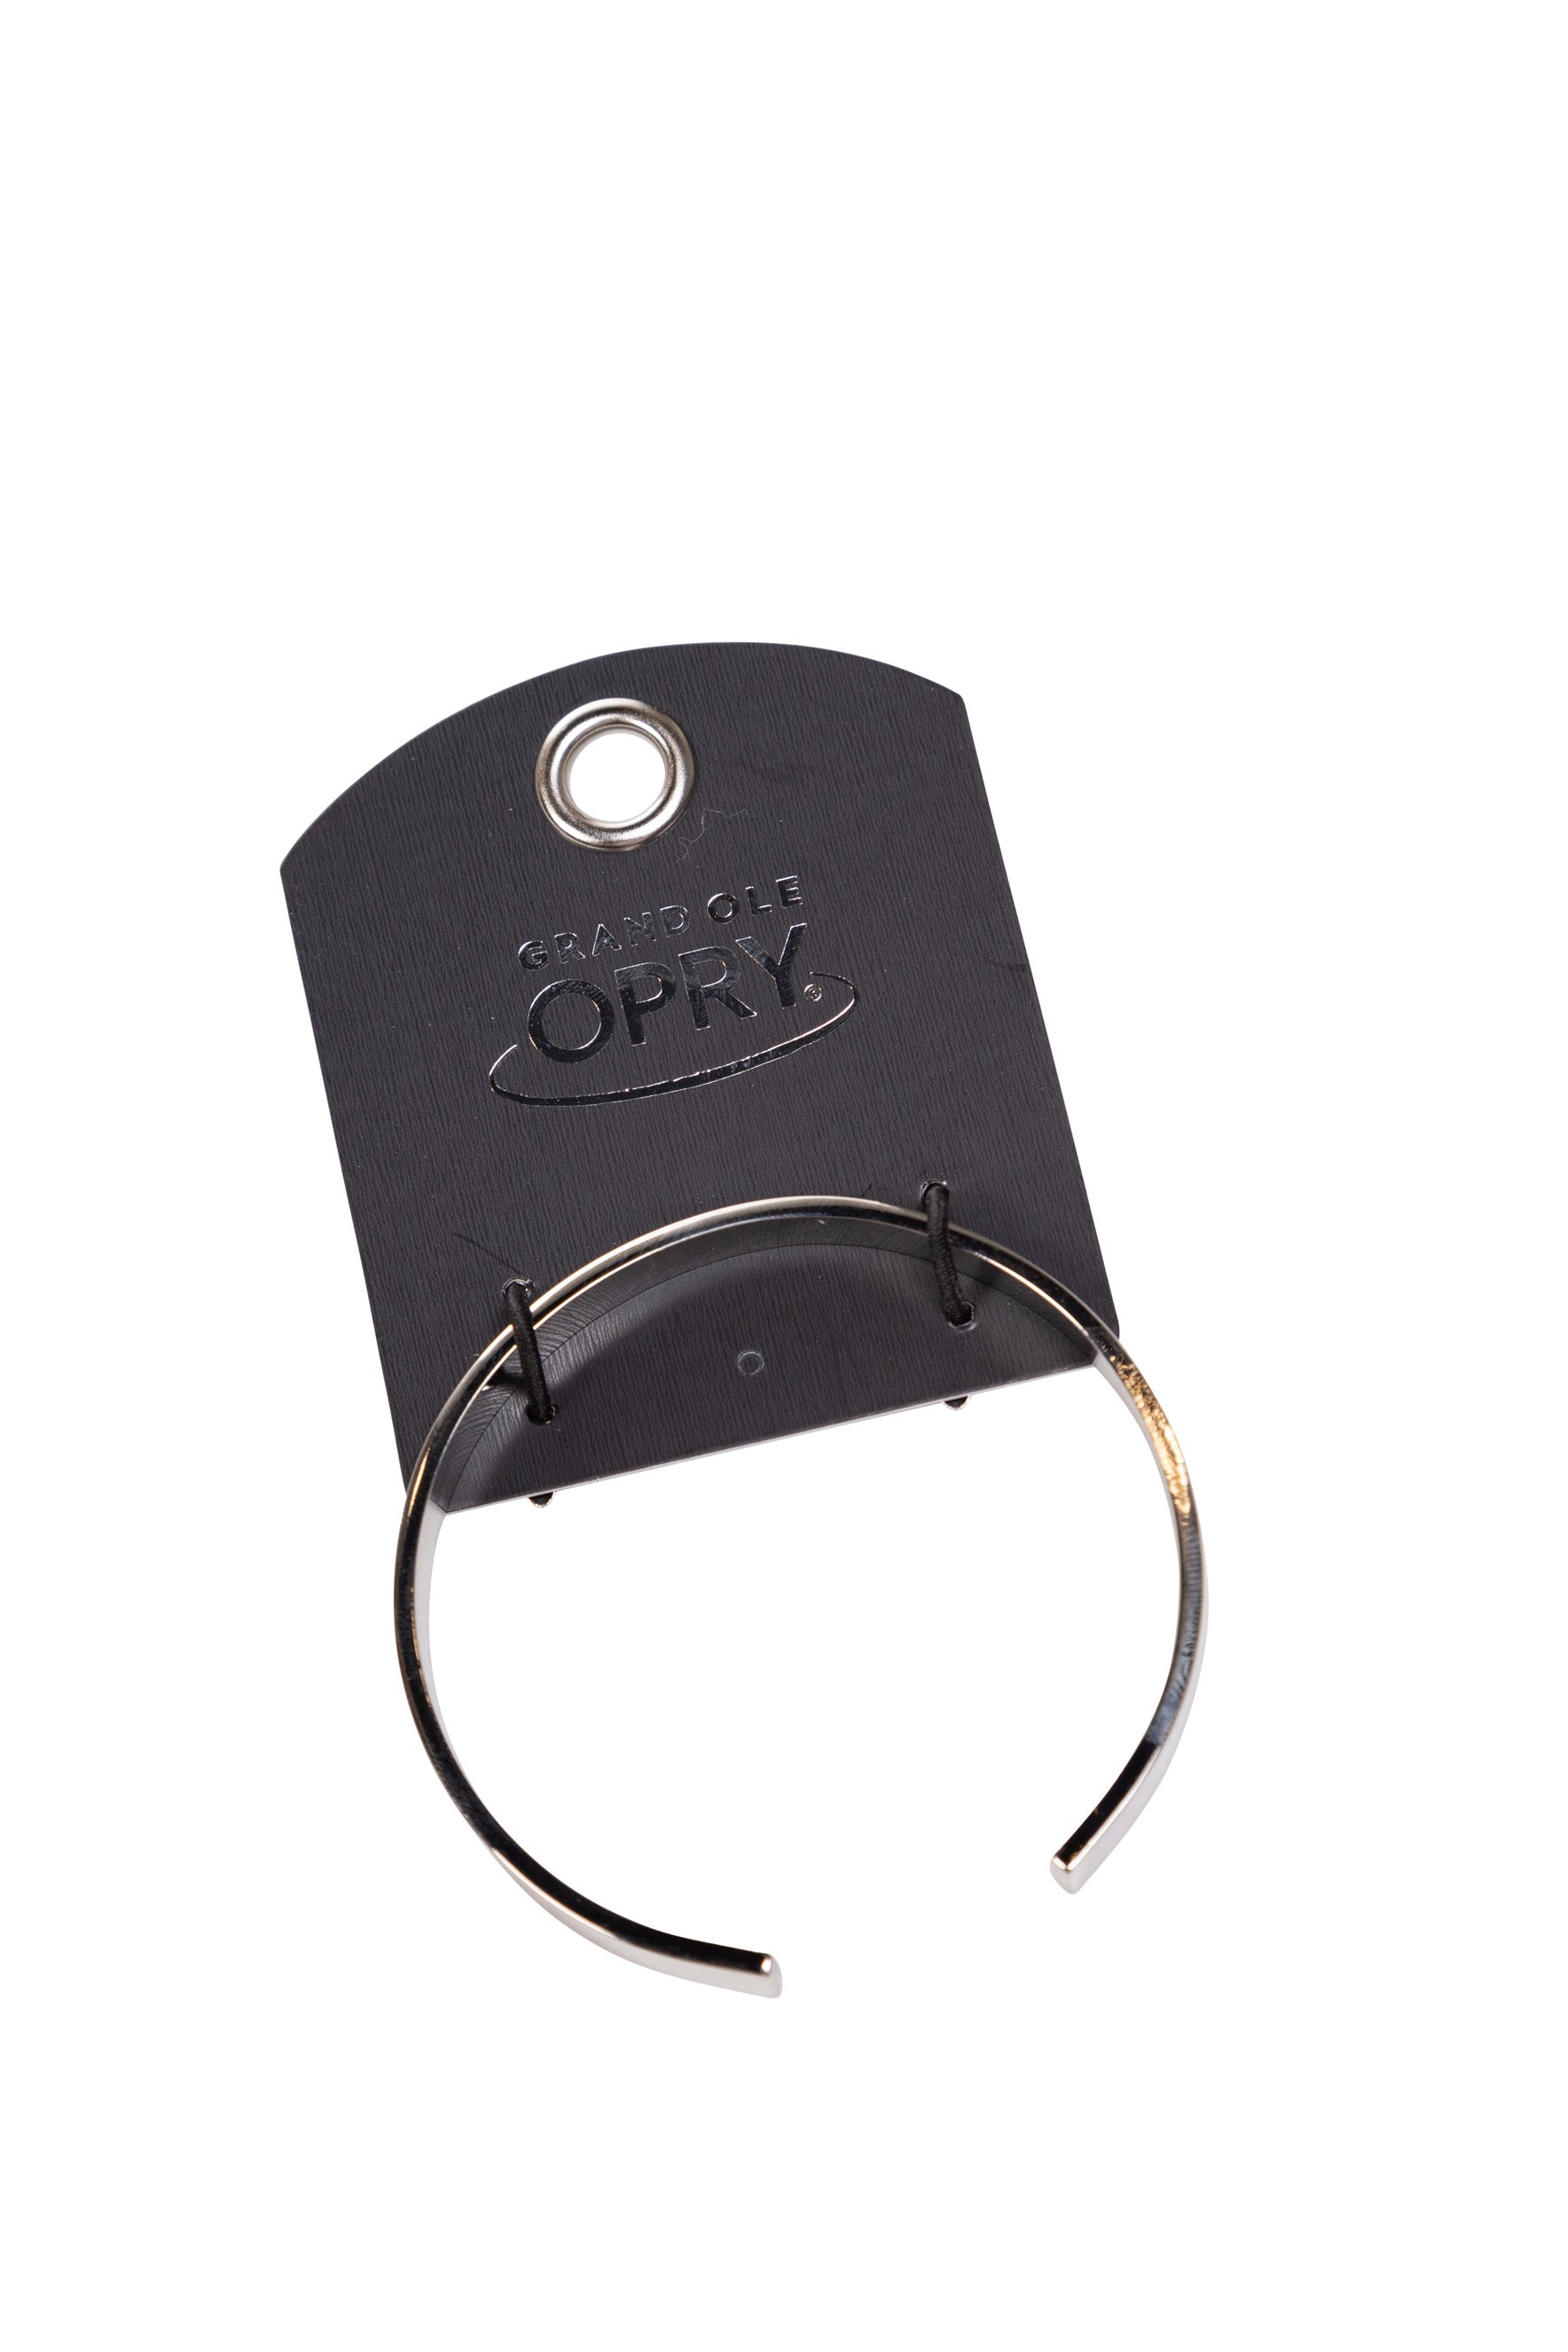 Opry Music Speaks Silver Cuff Bracelet